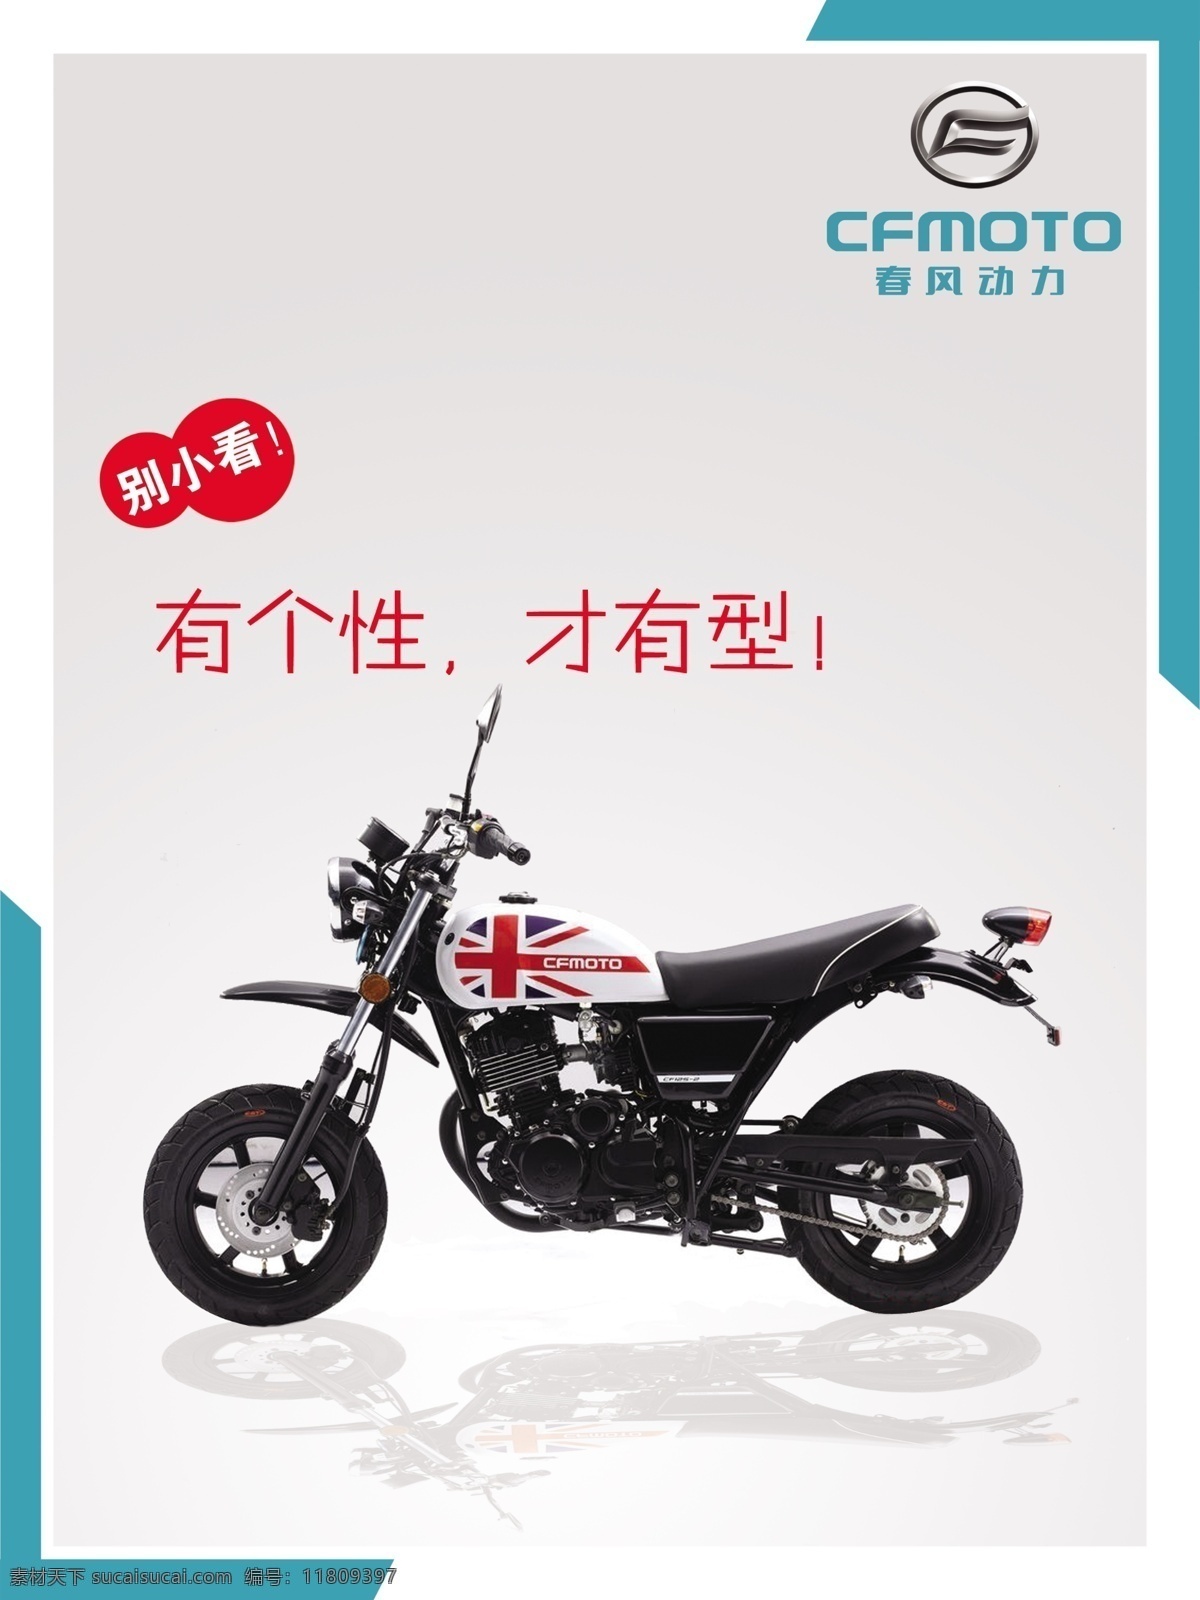 春风动力 狒狒米 车型 春风标志 dpi72 摩托车 广告设计模板 源文件